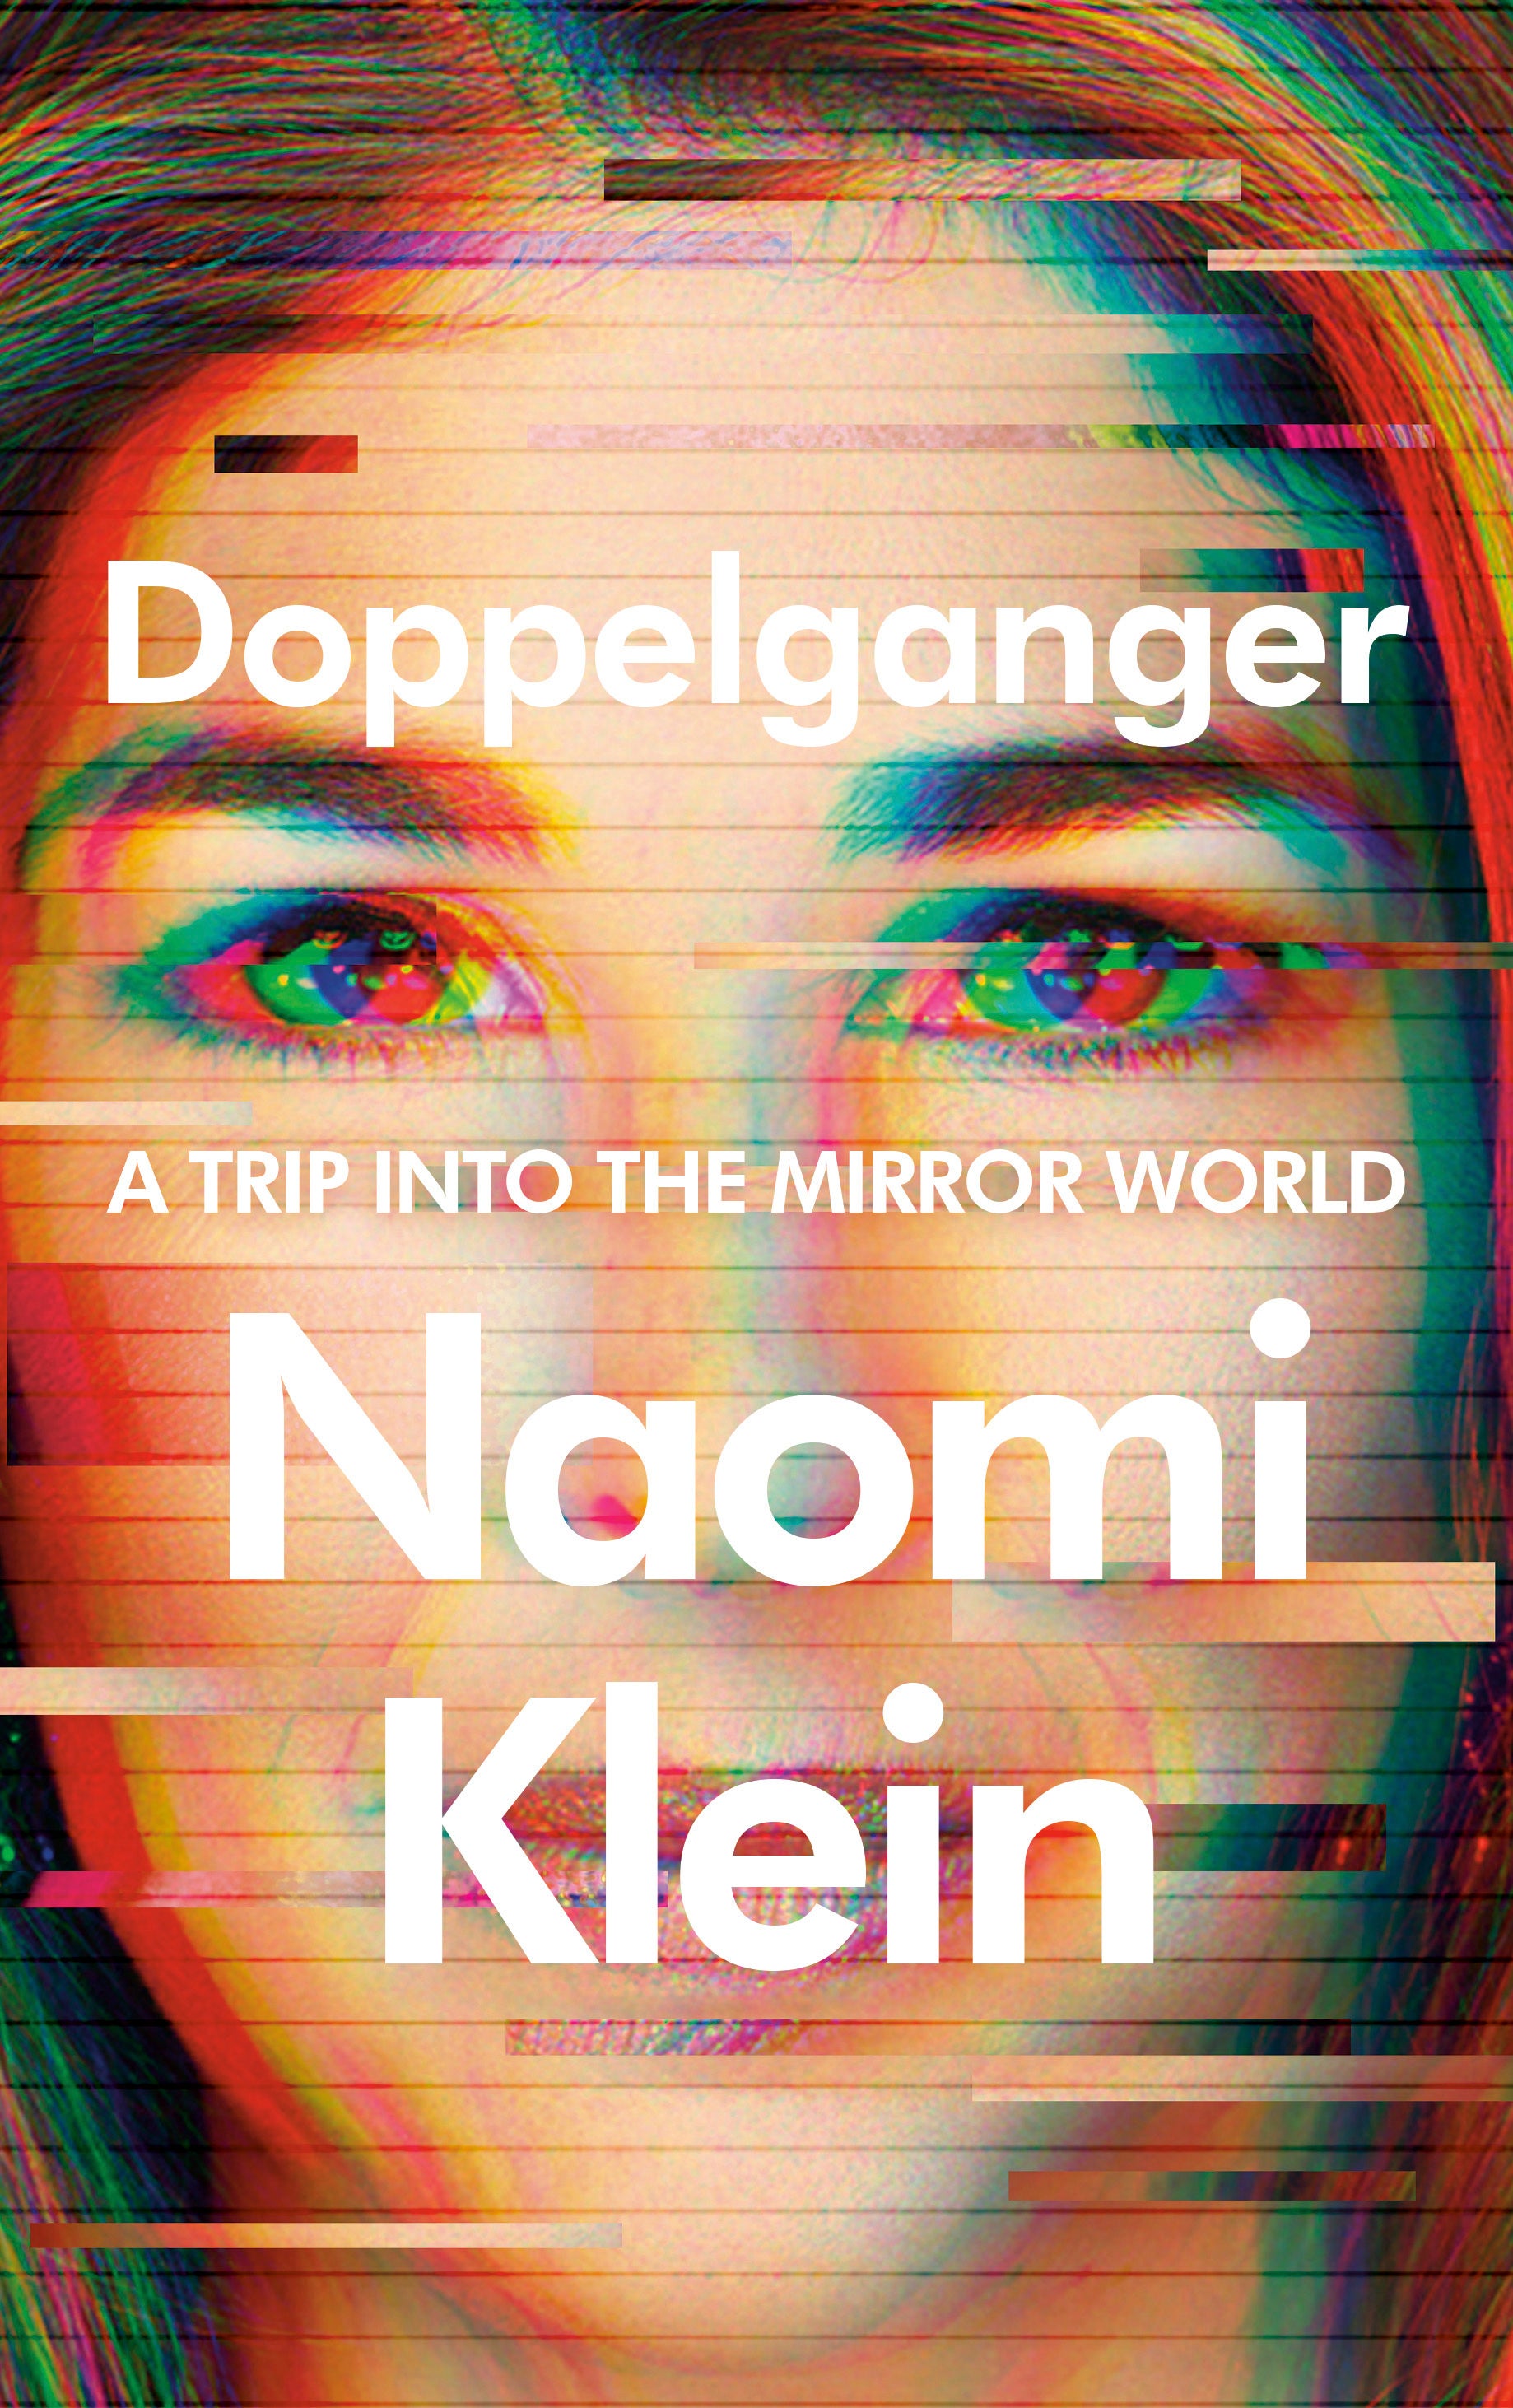 Naomi Klein’s new book